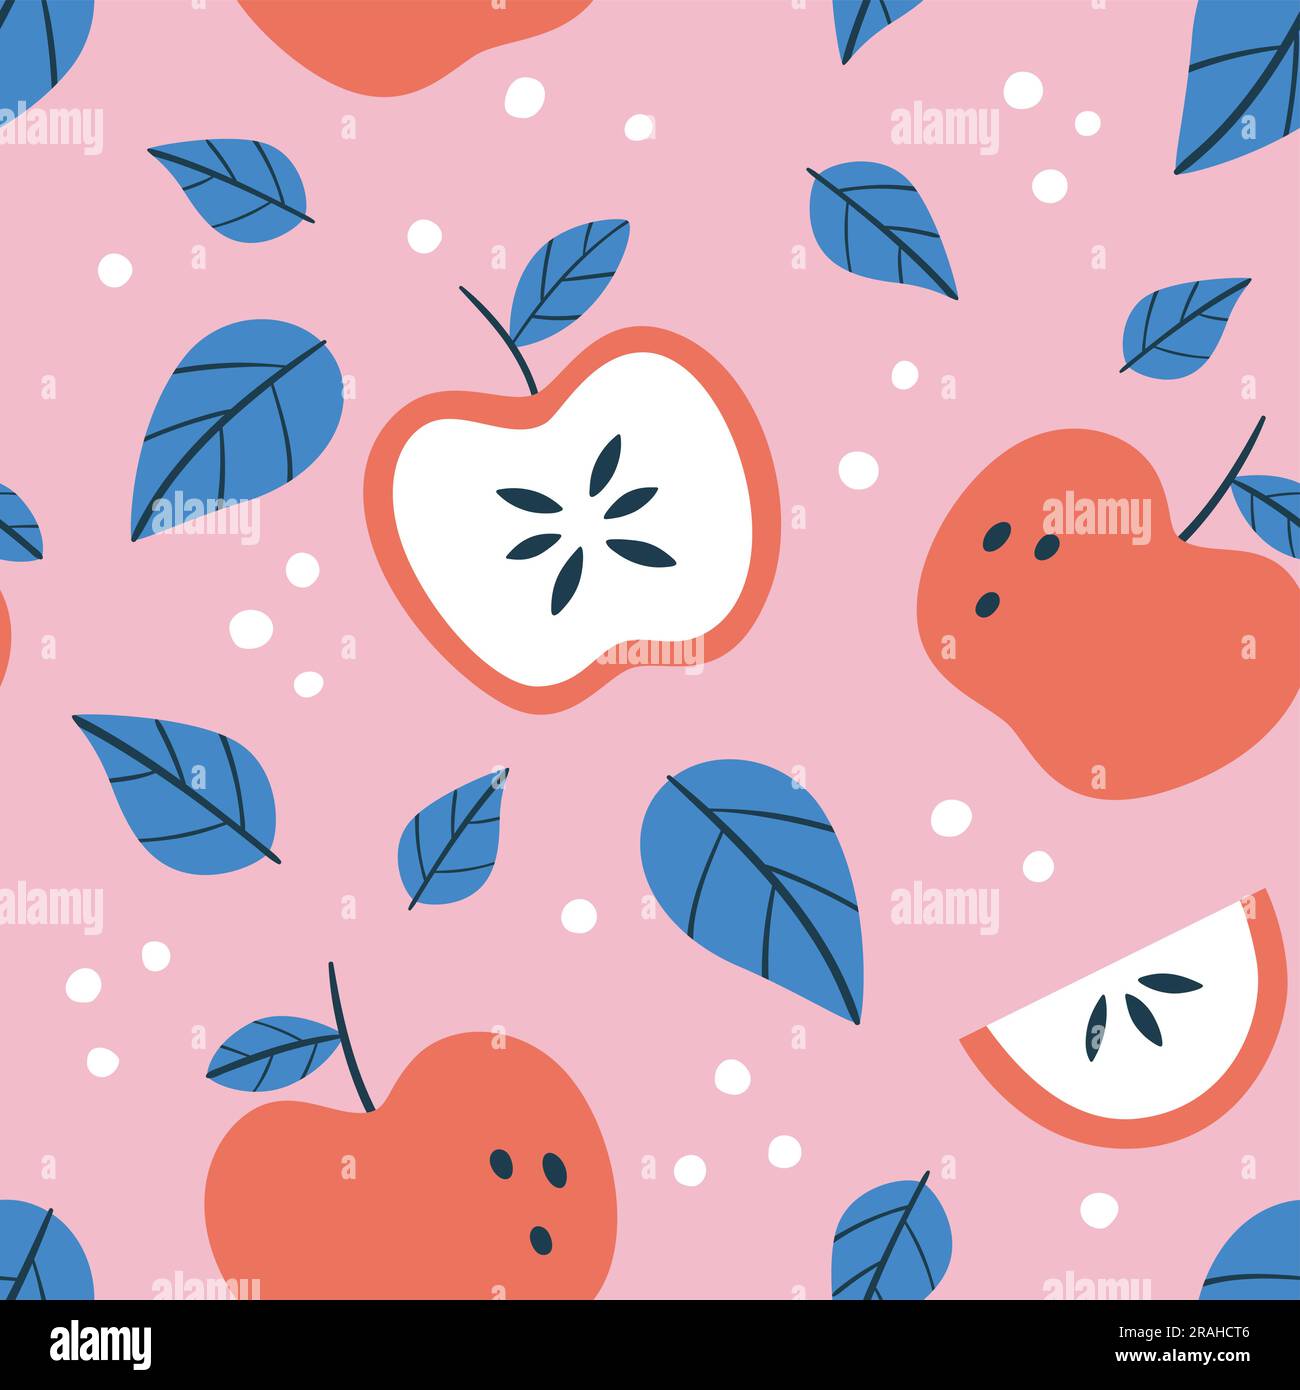 Apfelfrucht-Nahtmuster. Quadratisches Wiederholungsmuster mit Äpfeln und Blättern. Rosa-Blau-Komposition. Flaches Vektormuster. Stock Vektor